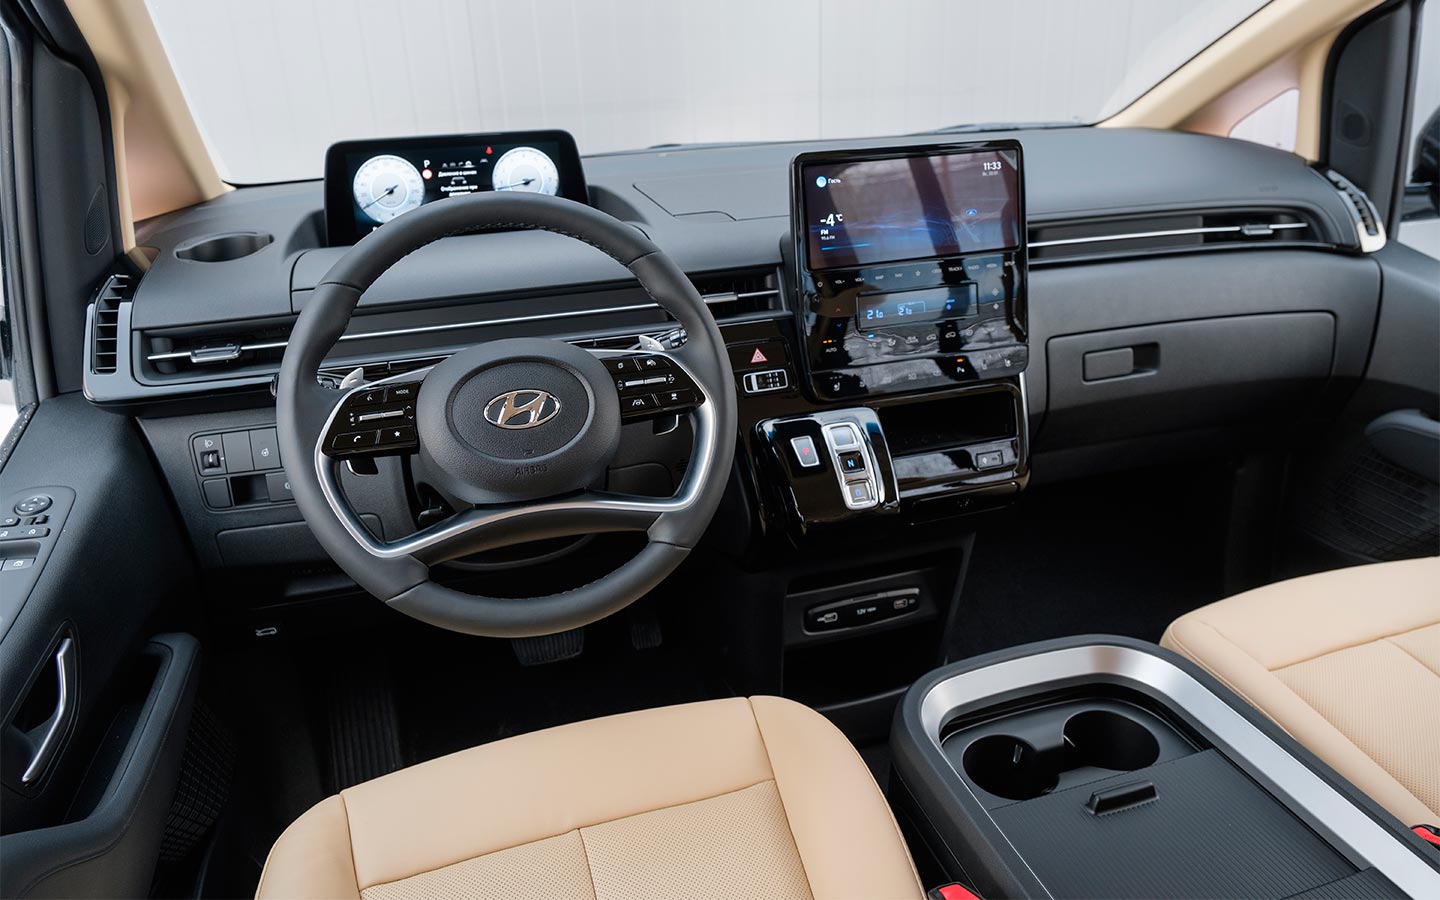 Оформление передней панели Hyundai Staria будто вторит футуристичному дизайну экстерьера. Центральную часть массивный передней панели венчает широкоформатной 10,25-дюймовый тачскрин медиасистемы, под котором скомпонована целая&nbsp;россыпь кнопок управления климатической установкой.